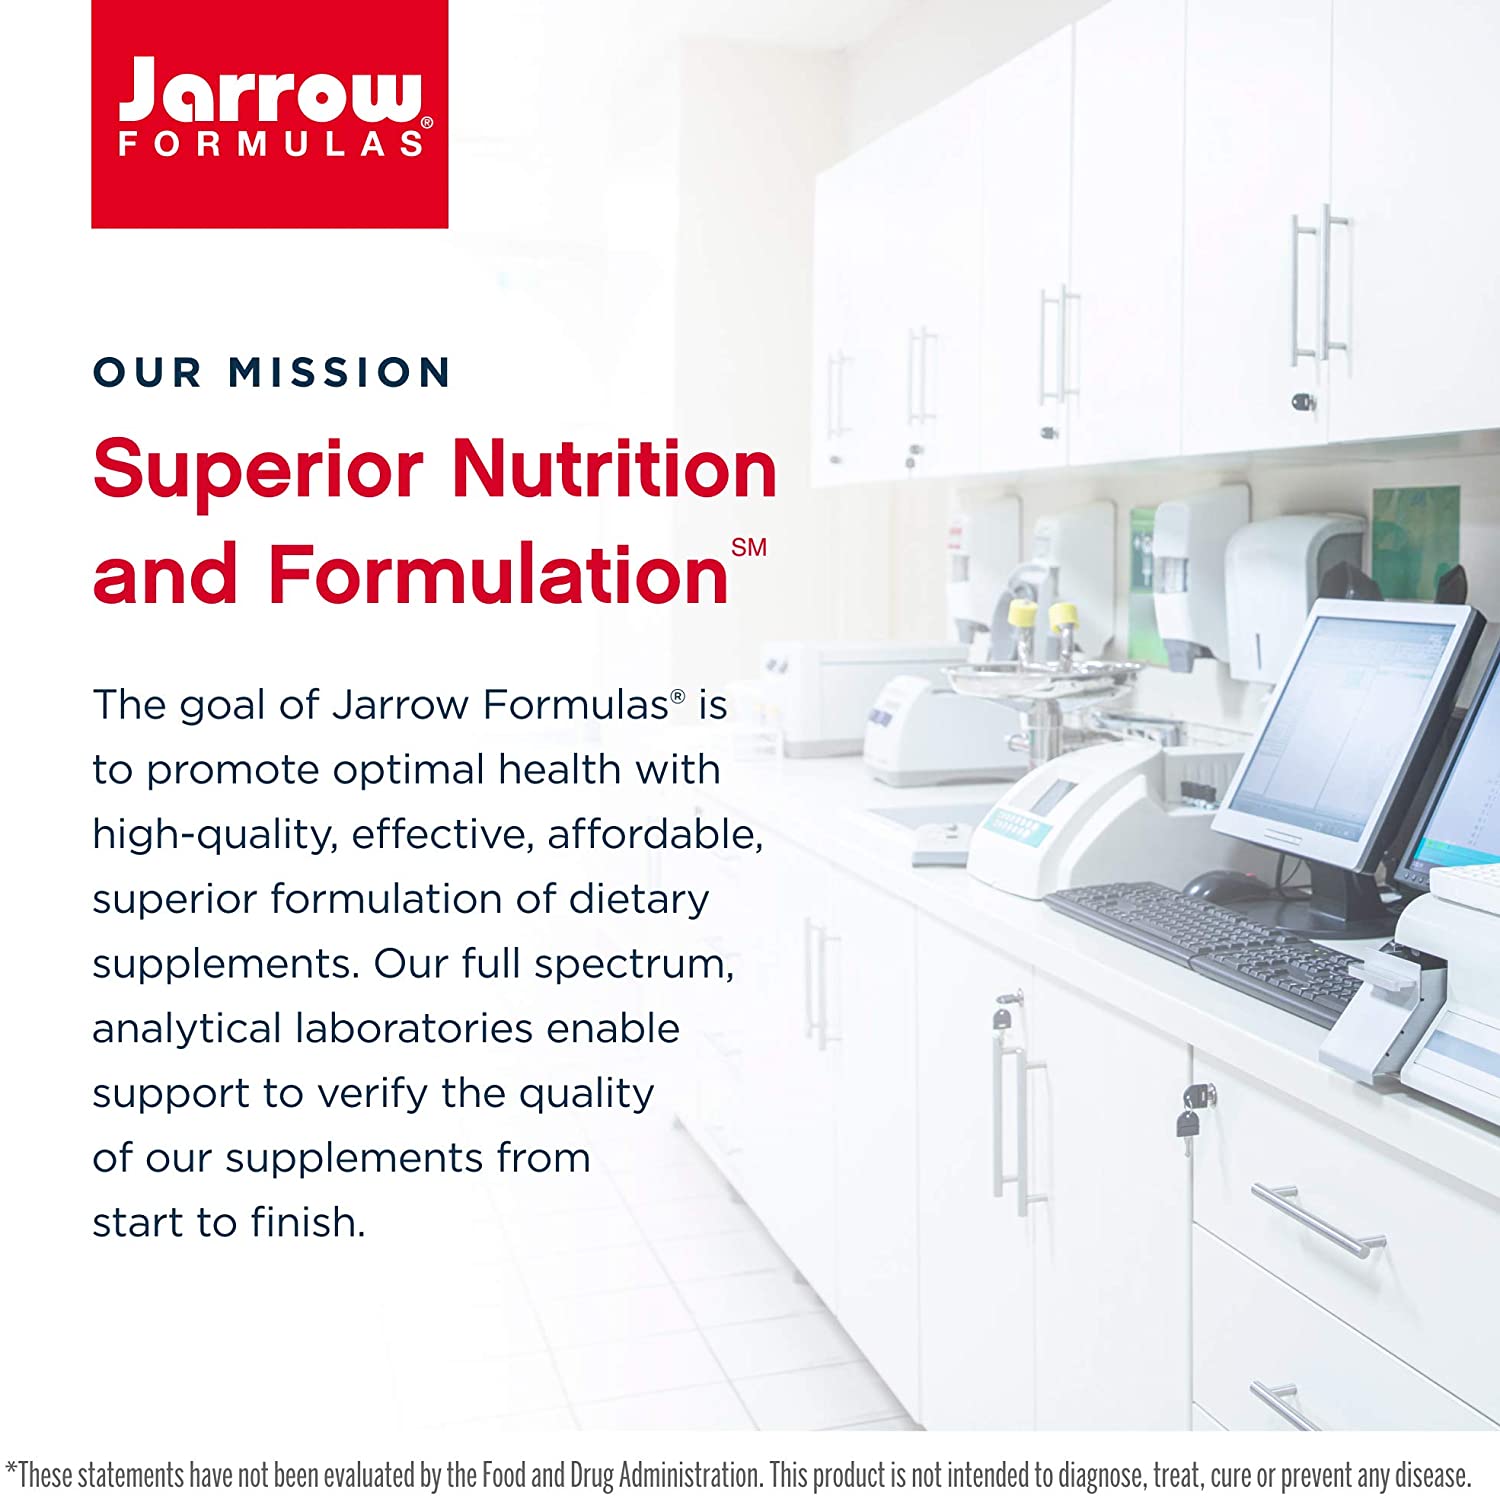 Jarrow Formulas Glutathione Reduced